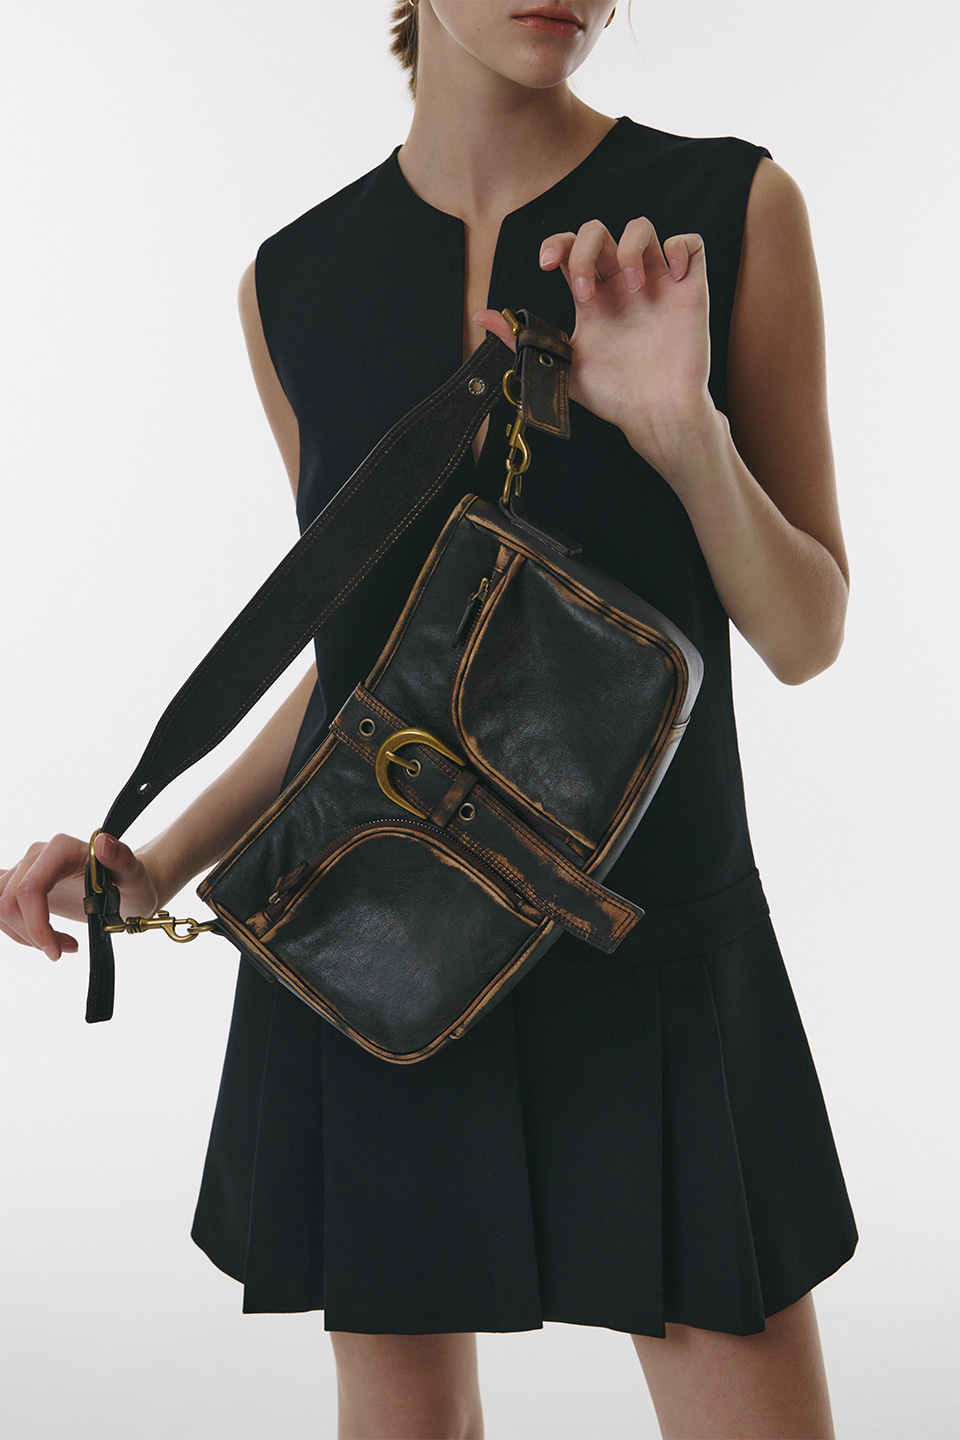 Lambskin Vintage Hobo Bag in Brown